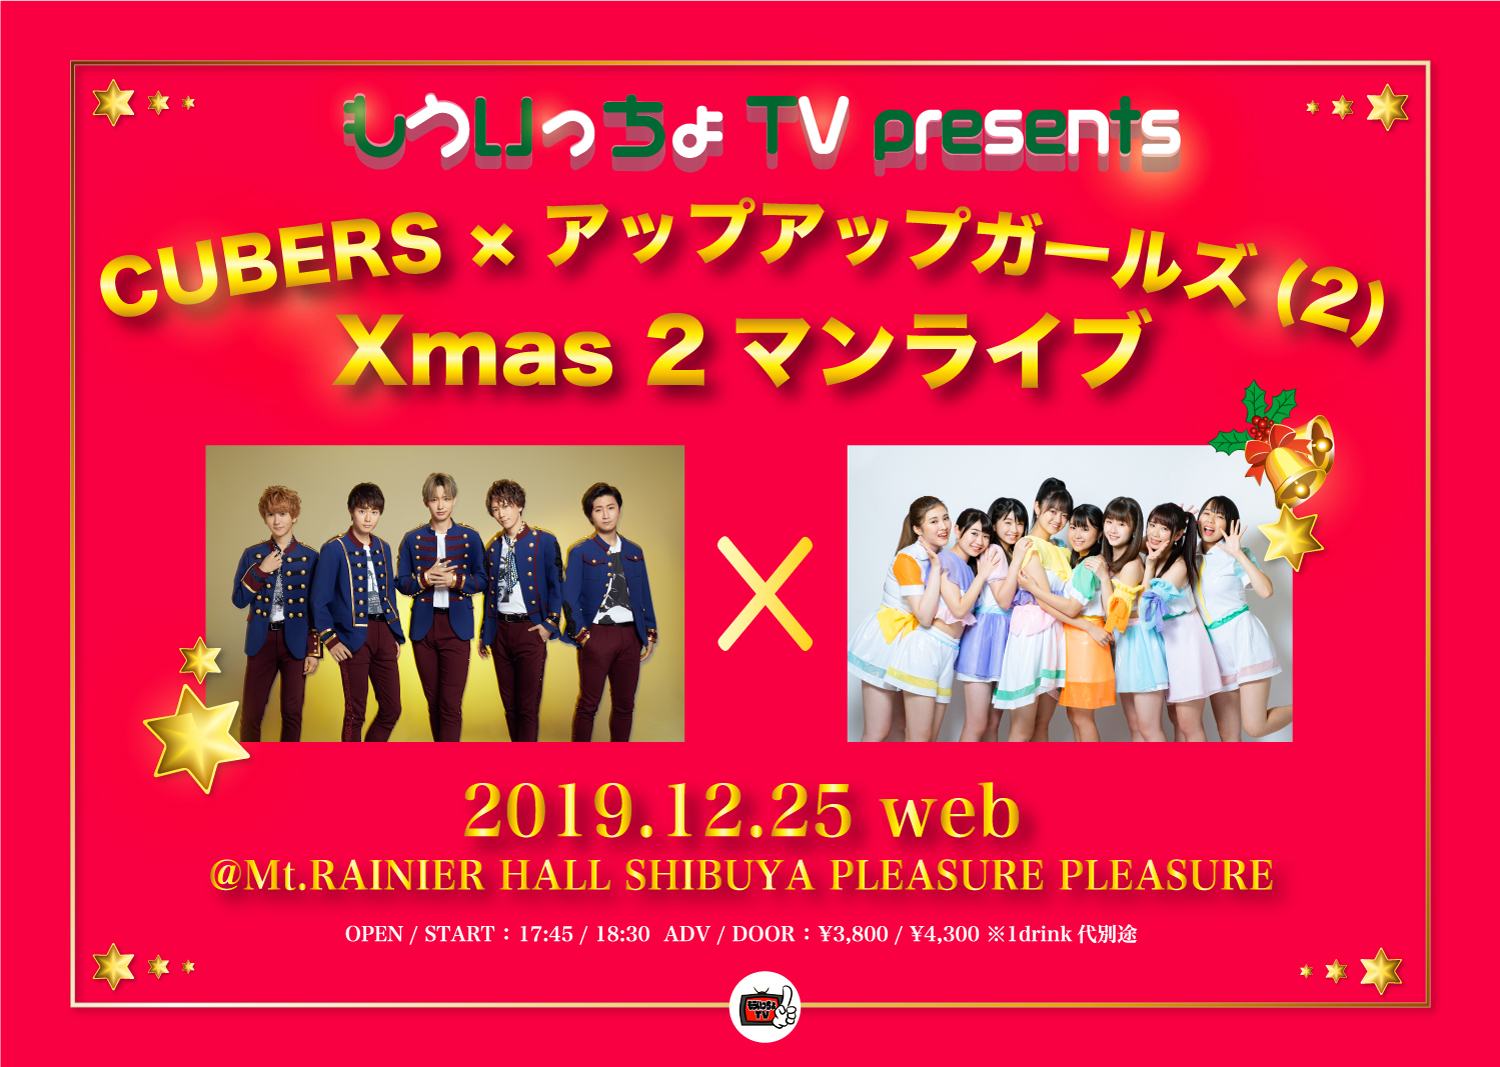 【NEWS】12月25日(水) CUBERS×アップアップガールズ(２)のXmas2マンライブ開催決定！